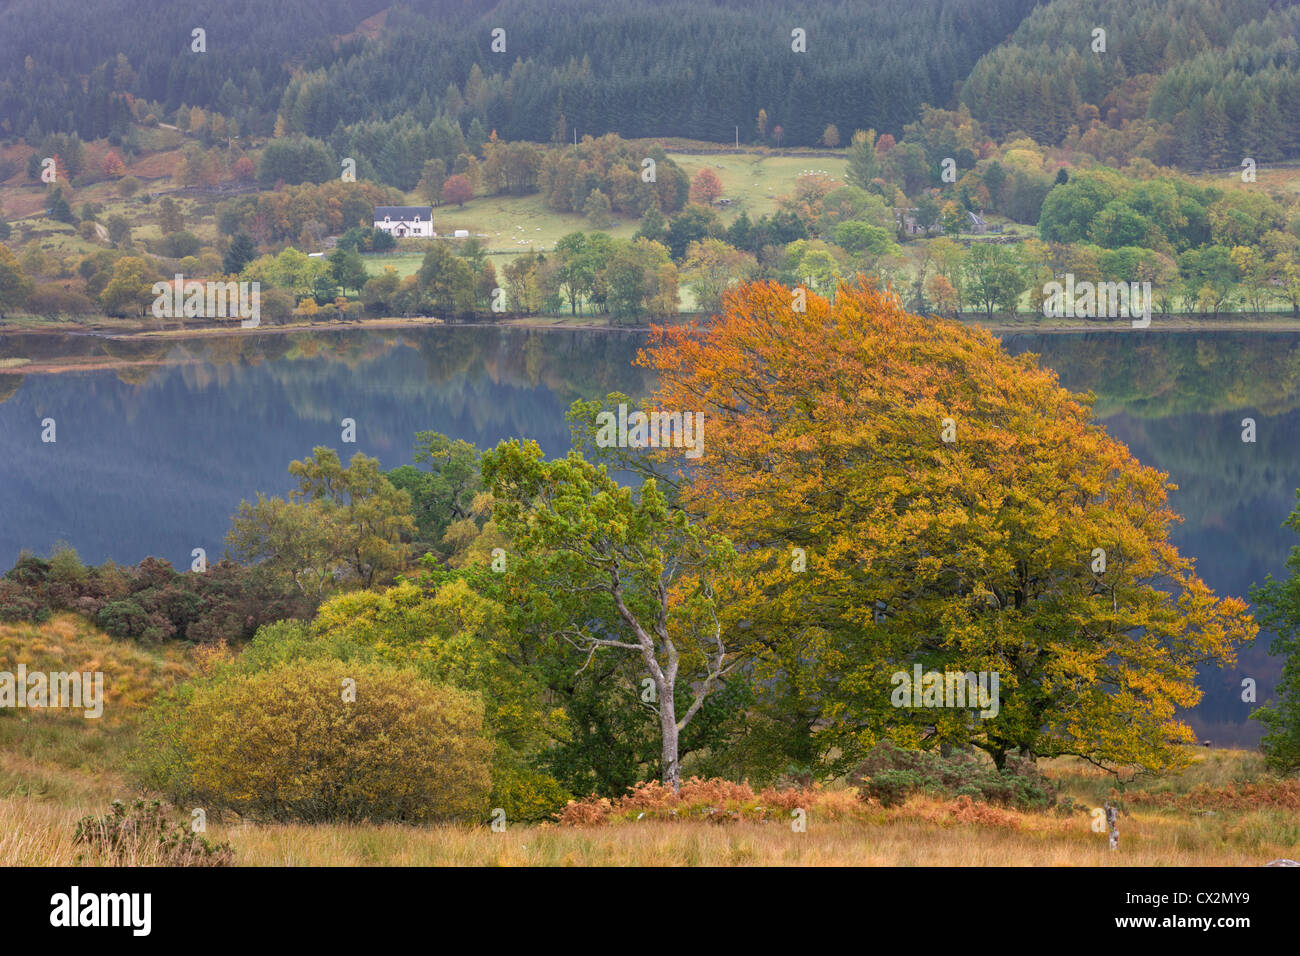 Feuillage de l'automne au-dessus du Loch doine, Trossachs, Stirling, Ecosse. L'automne (octobre) 2010. Banque D'Images